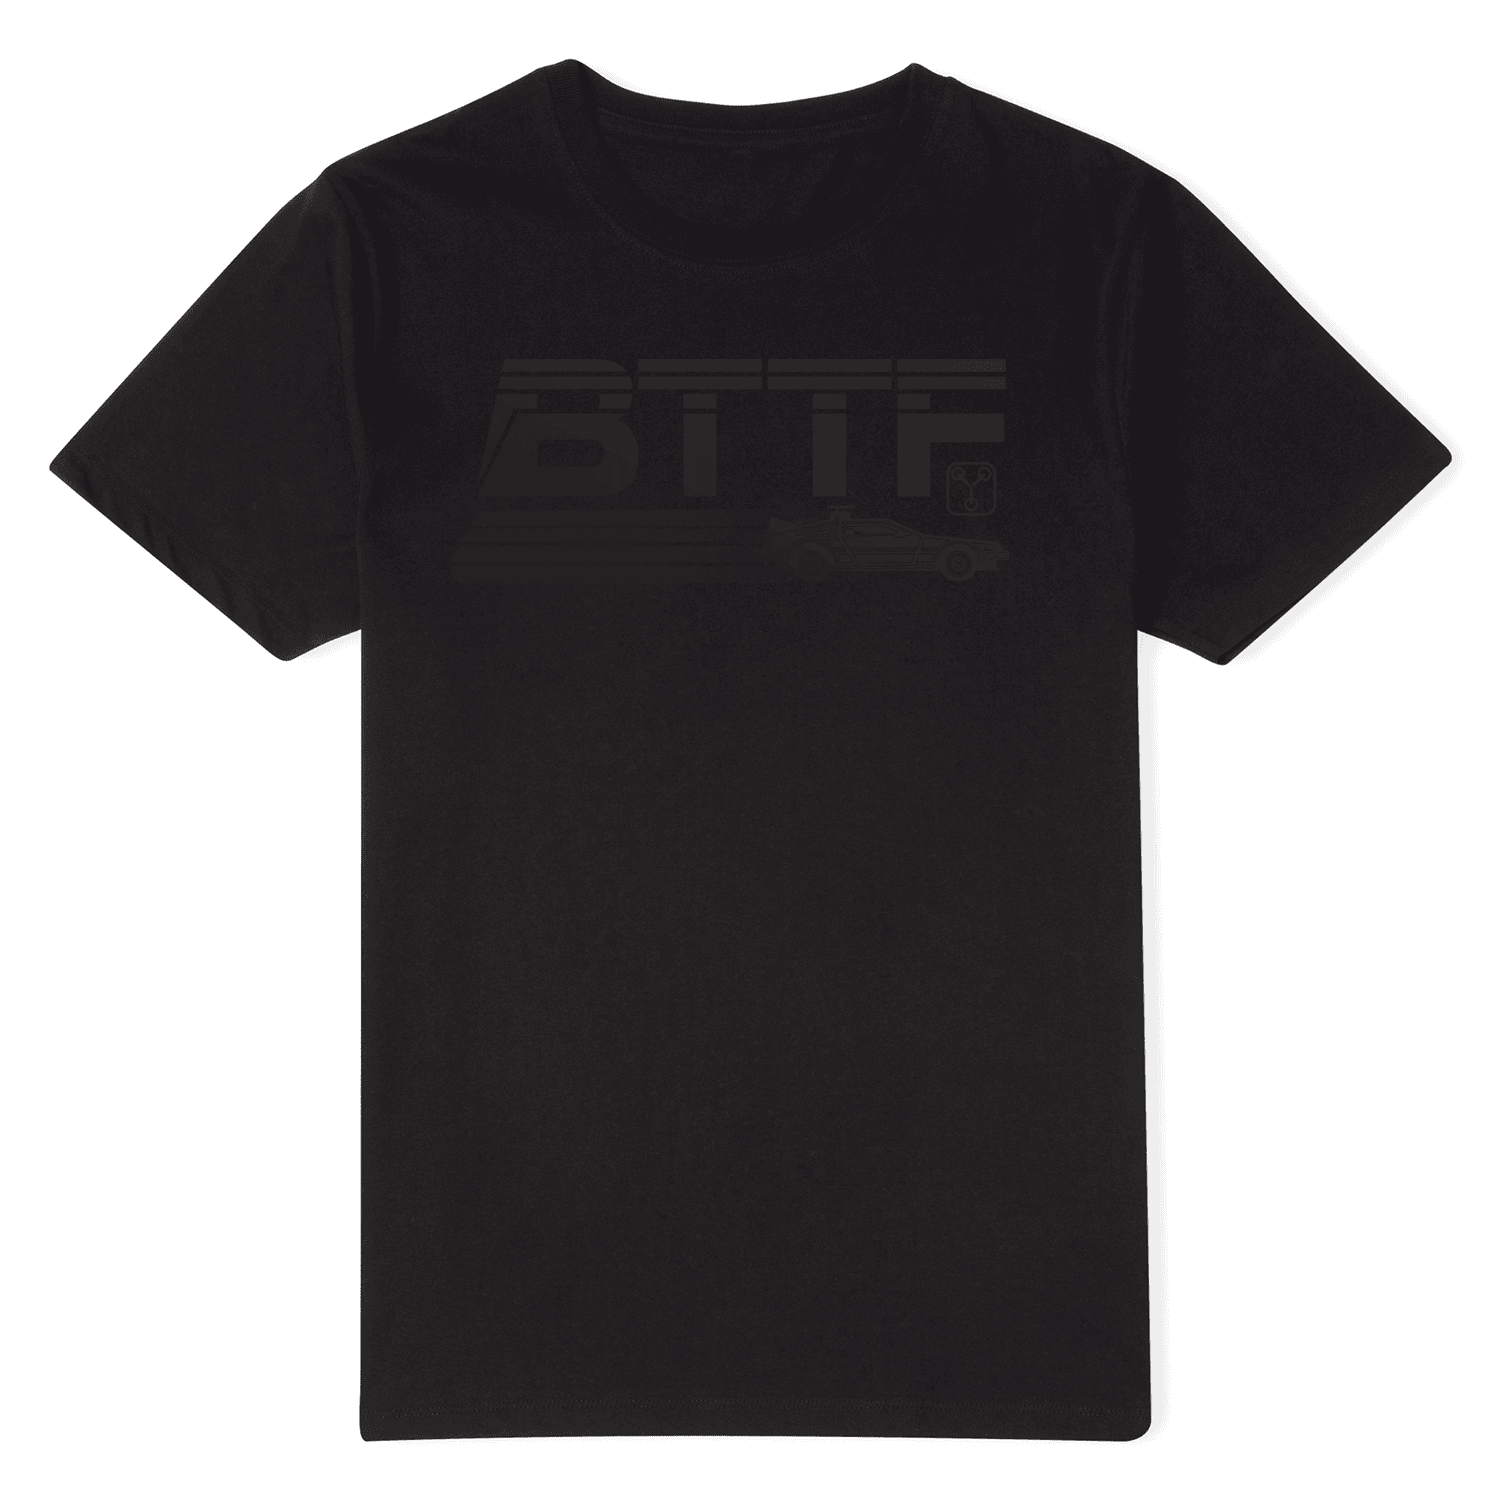 Back To The Future Monochrome Men's T-Shirt - Black